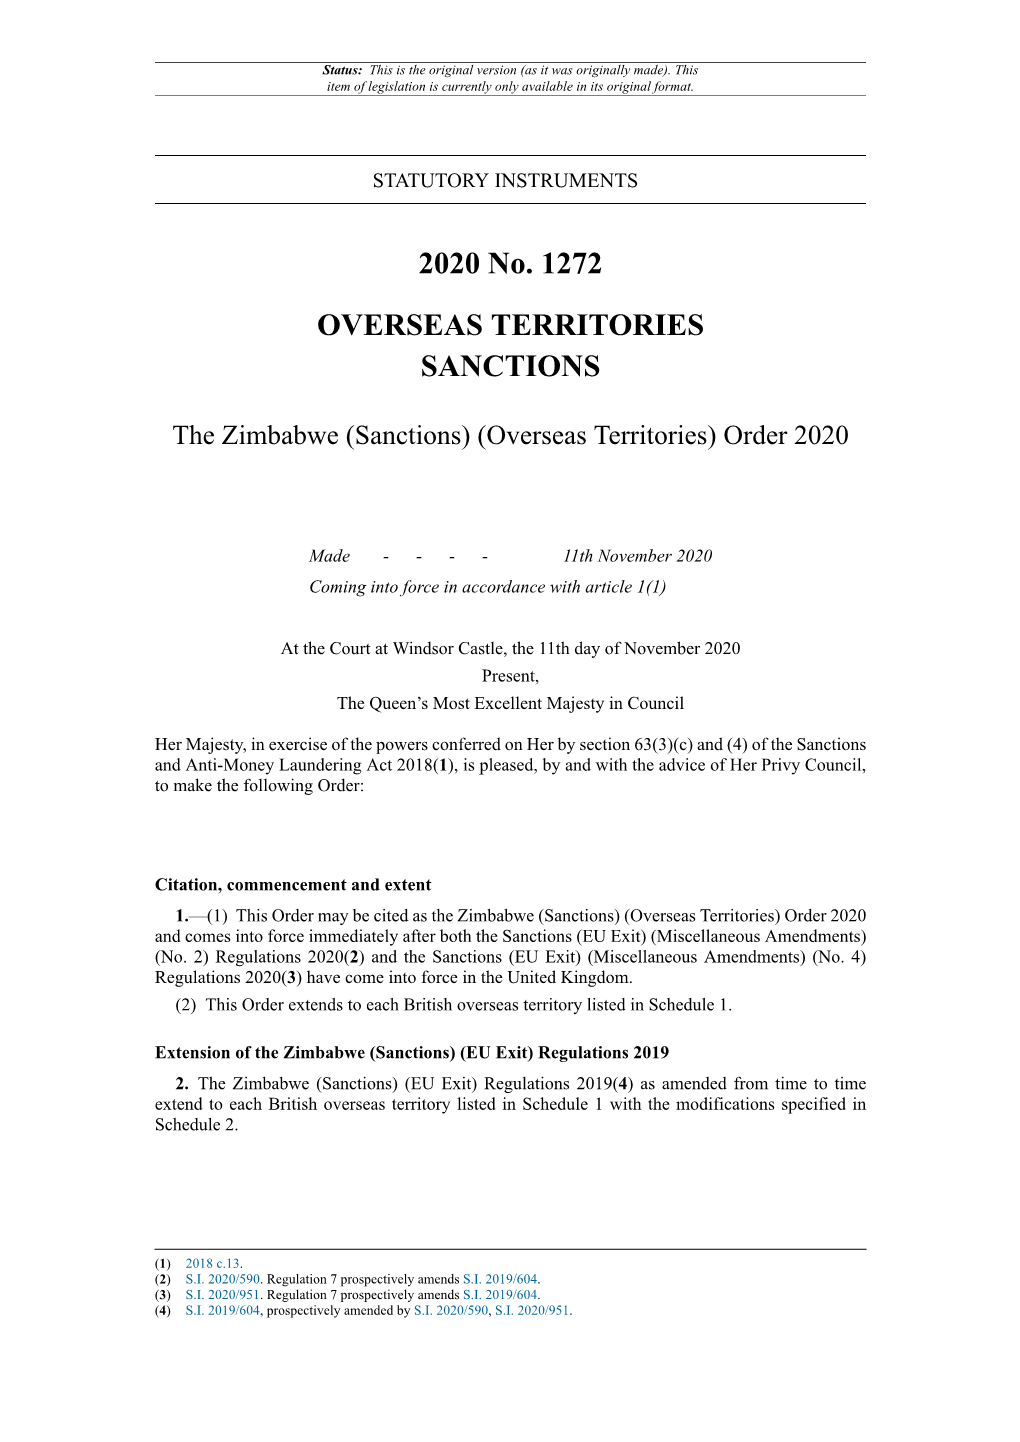 The Zimbabwe (Sanctions) (Overseas Territories) Order 2020